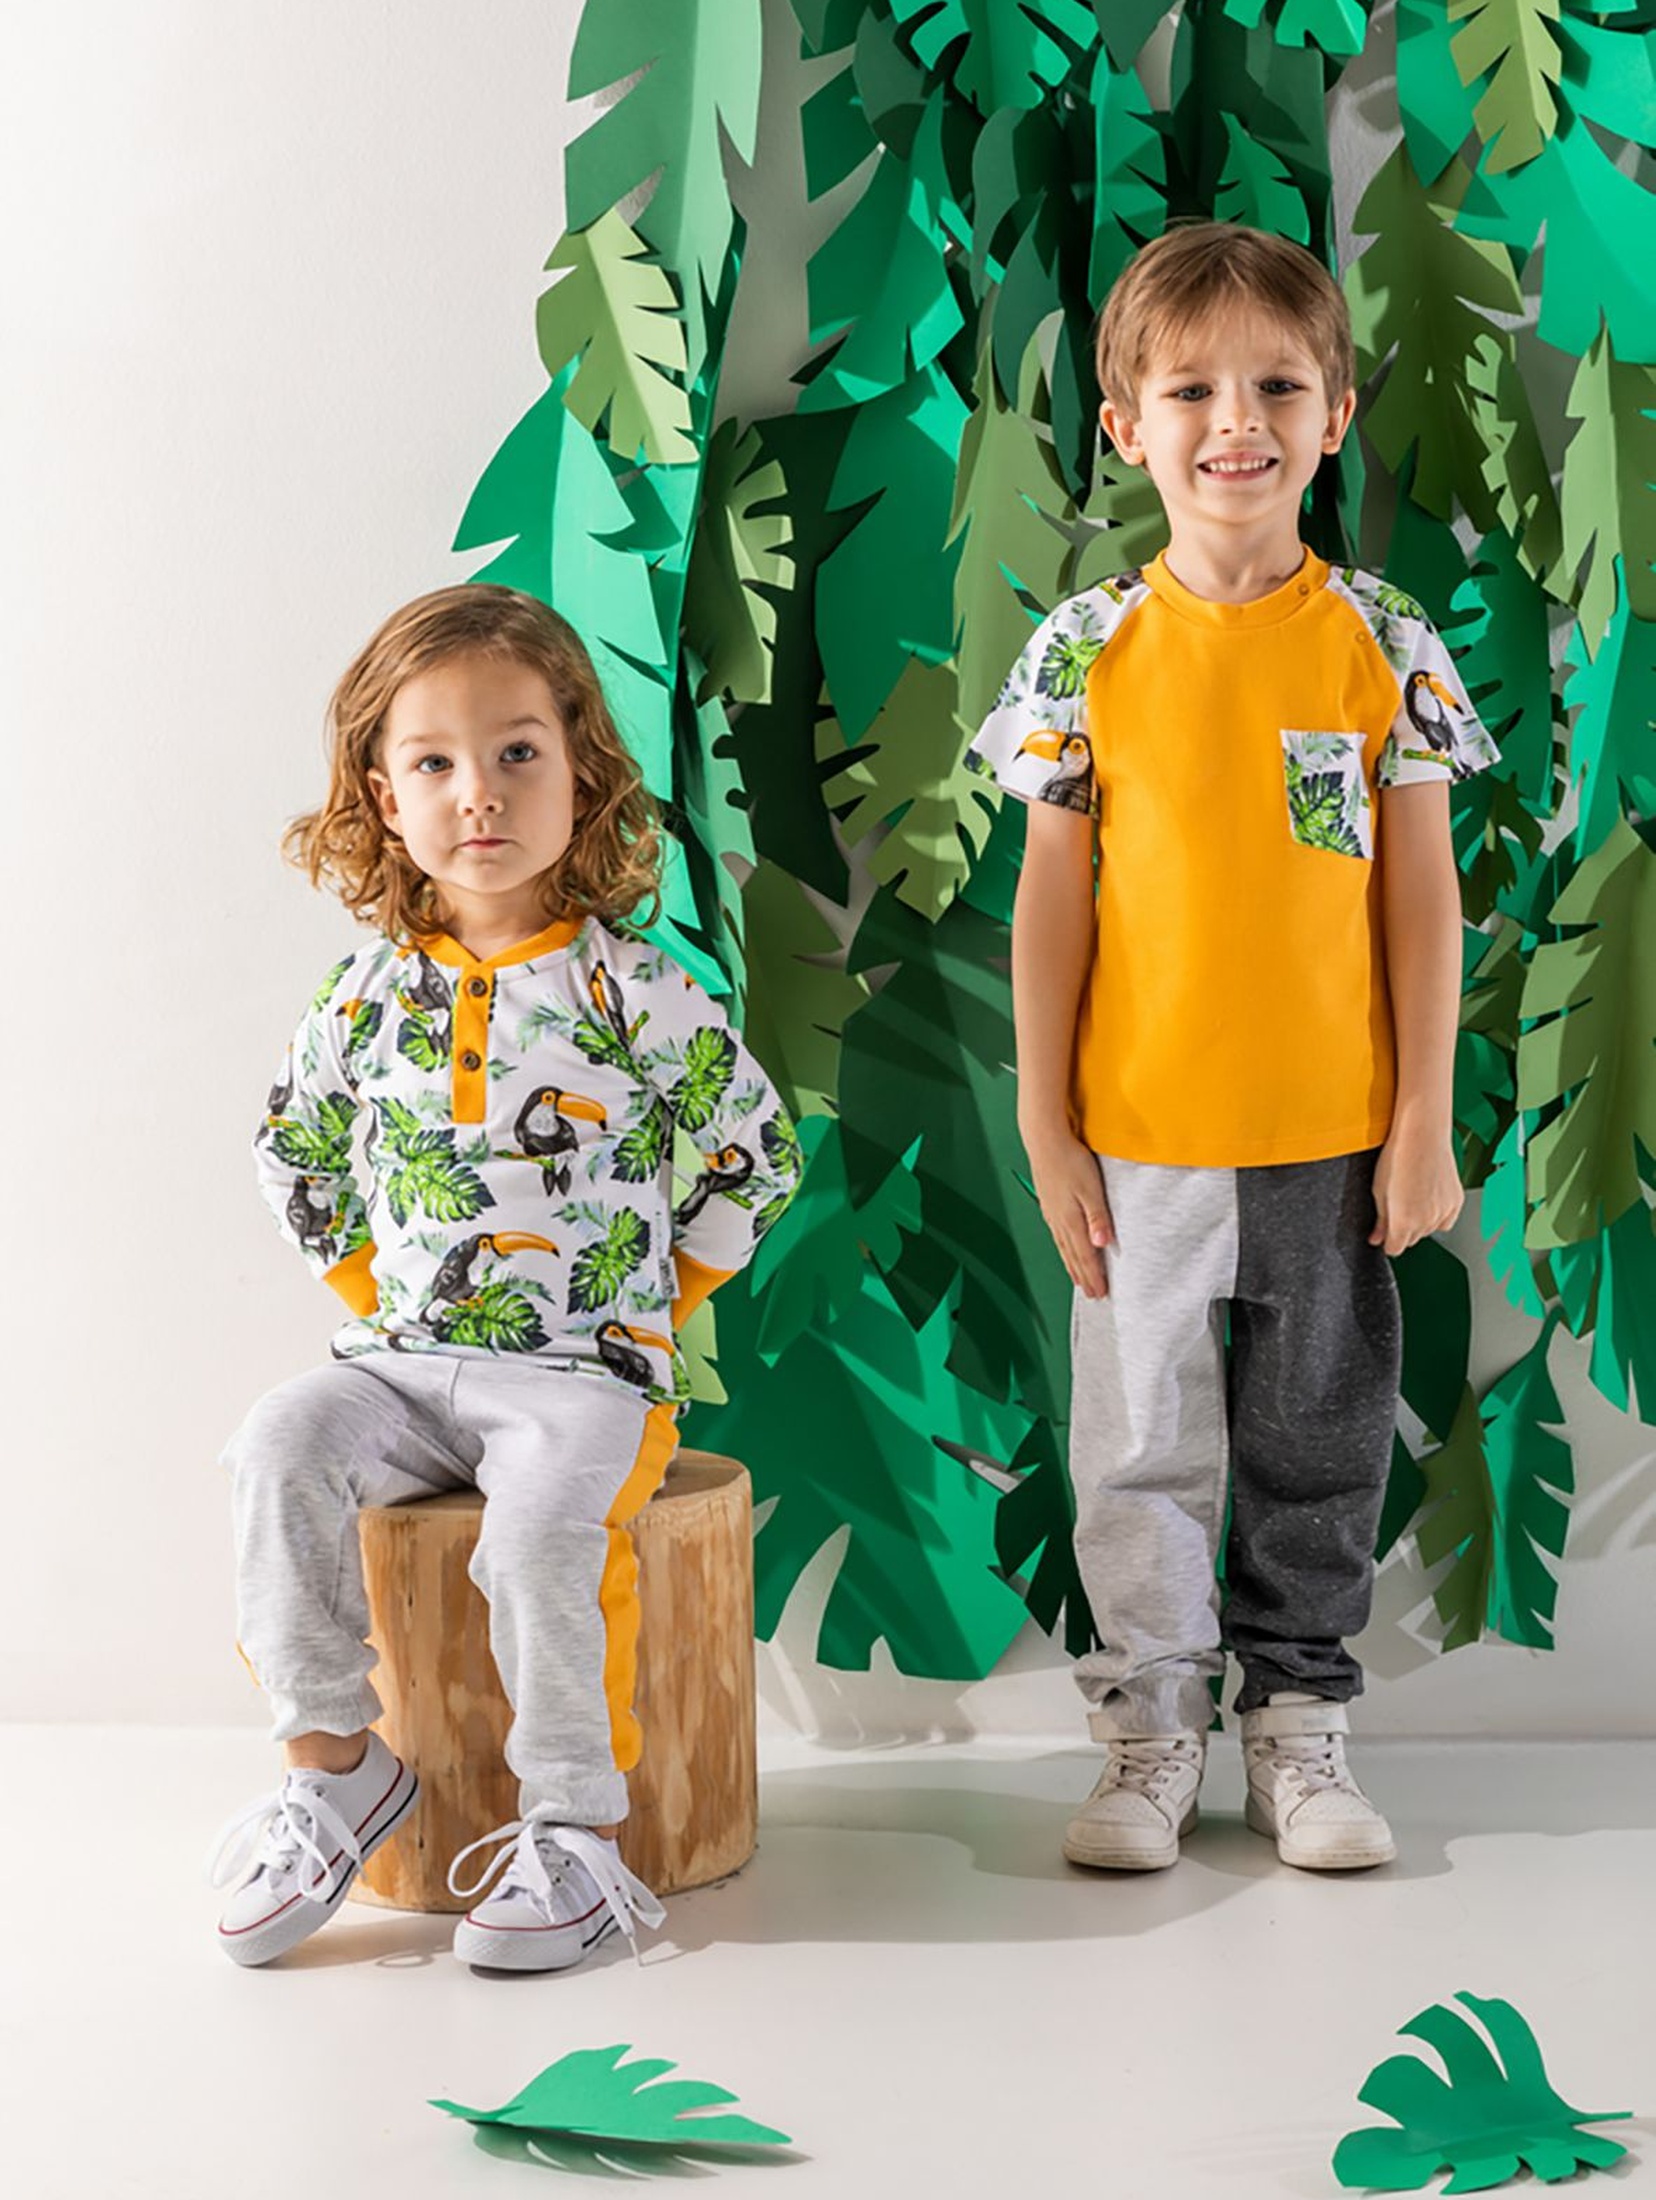 Bawełniany t-shirt niemowlęcy w tropikalny wzór TUKAN